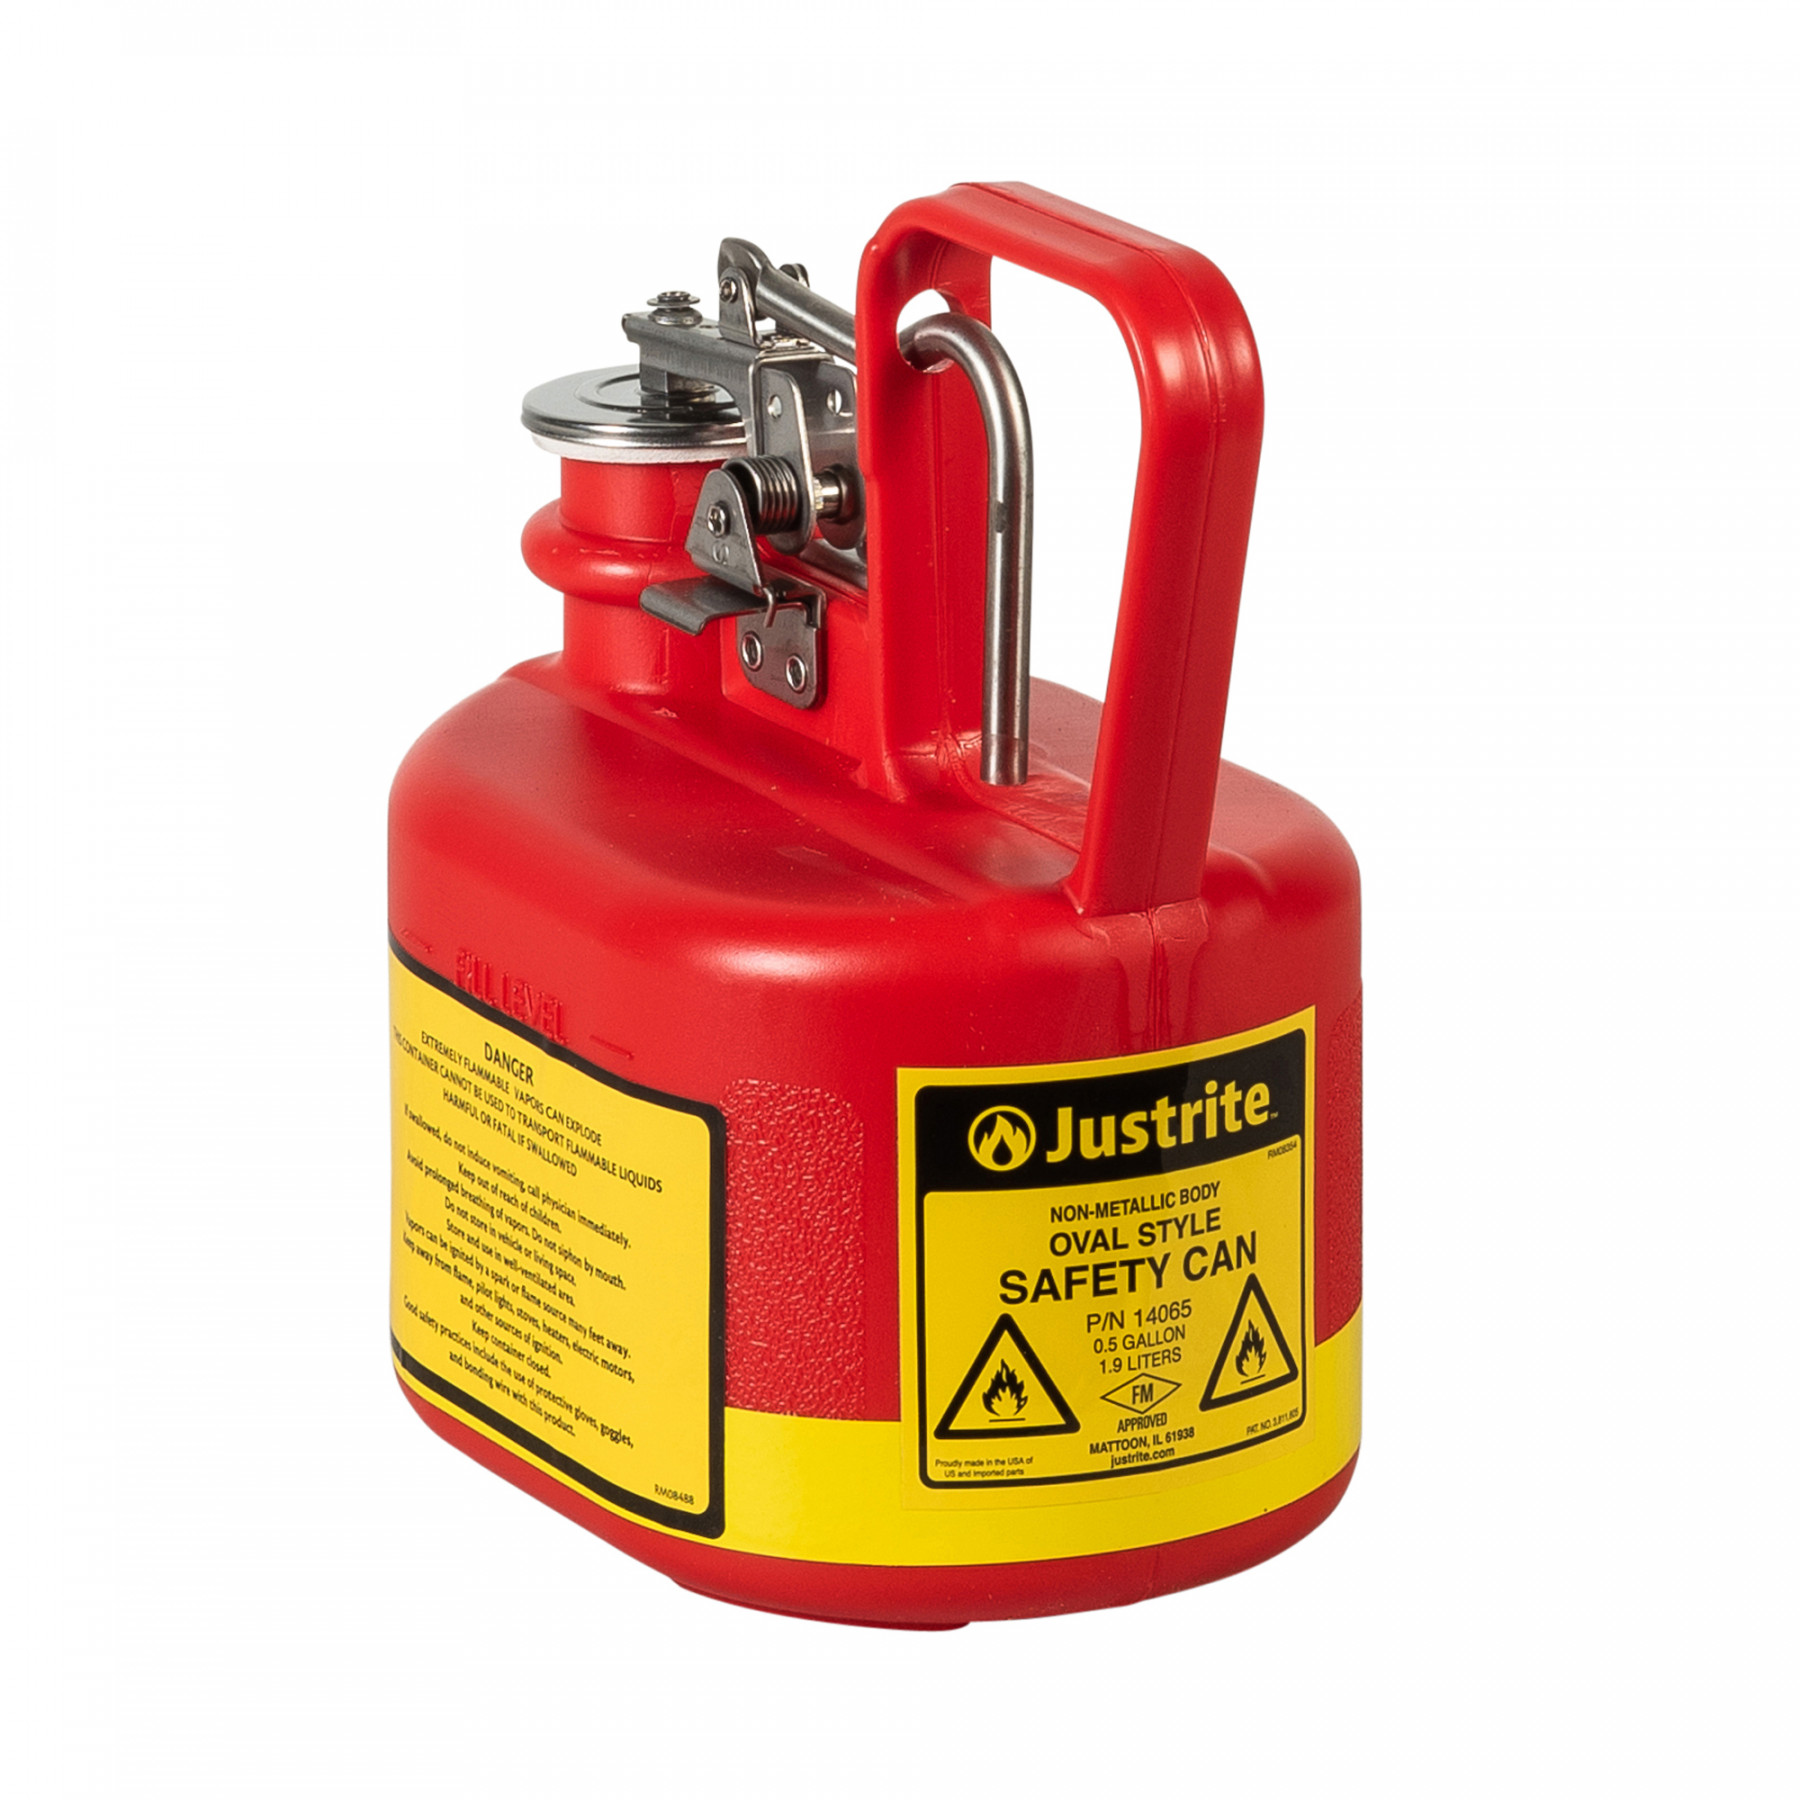 HDPE Sicherheitsbehälter Typ I, 2 Liter in rot für brennbare Flüsssigkeiten